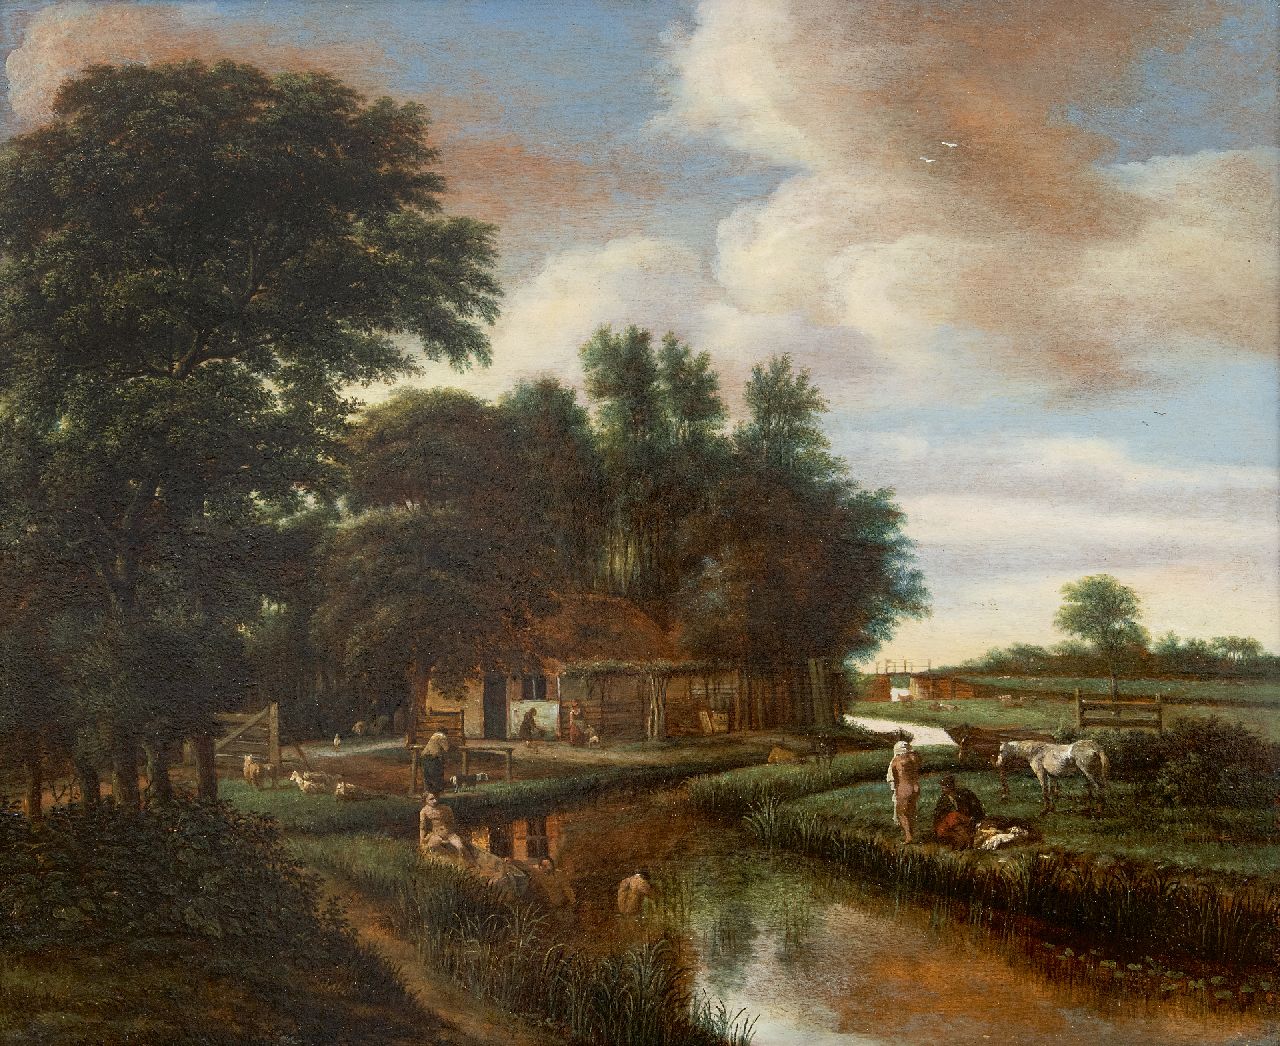 Pieter van Asch | Baders in een landschap, olieverf op paneel, 42,0 x 51,5 cm, gesigneerd l.o. met monogram